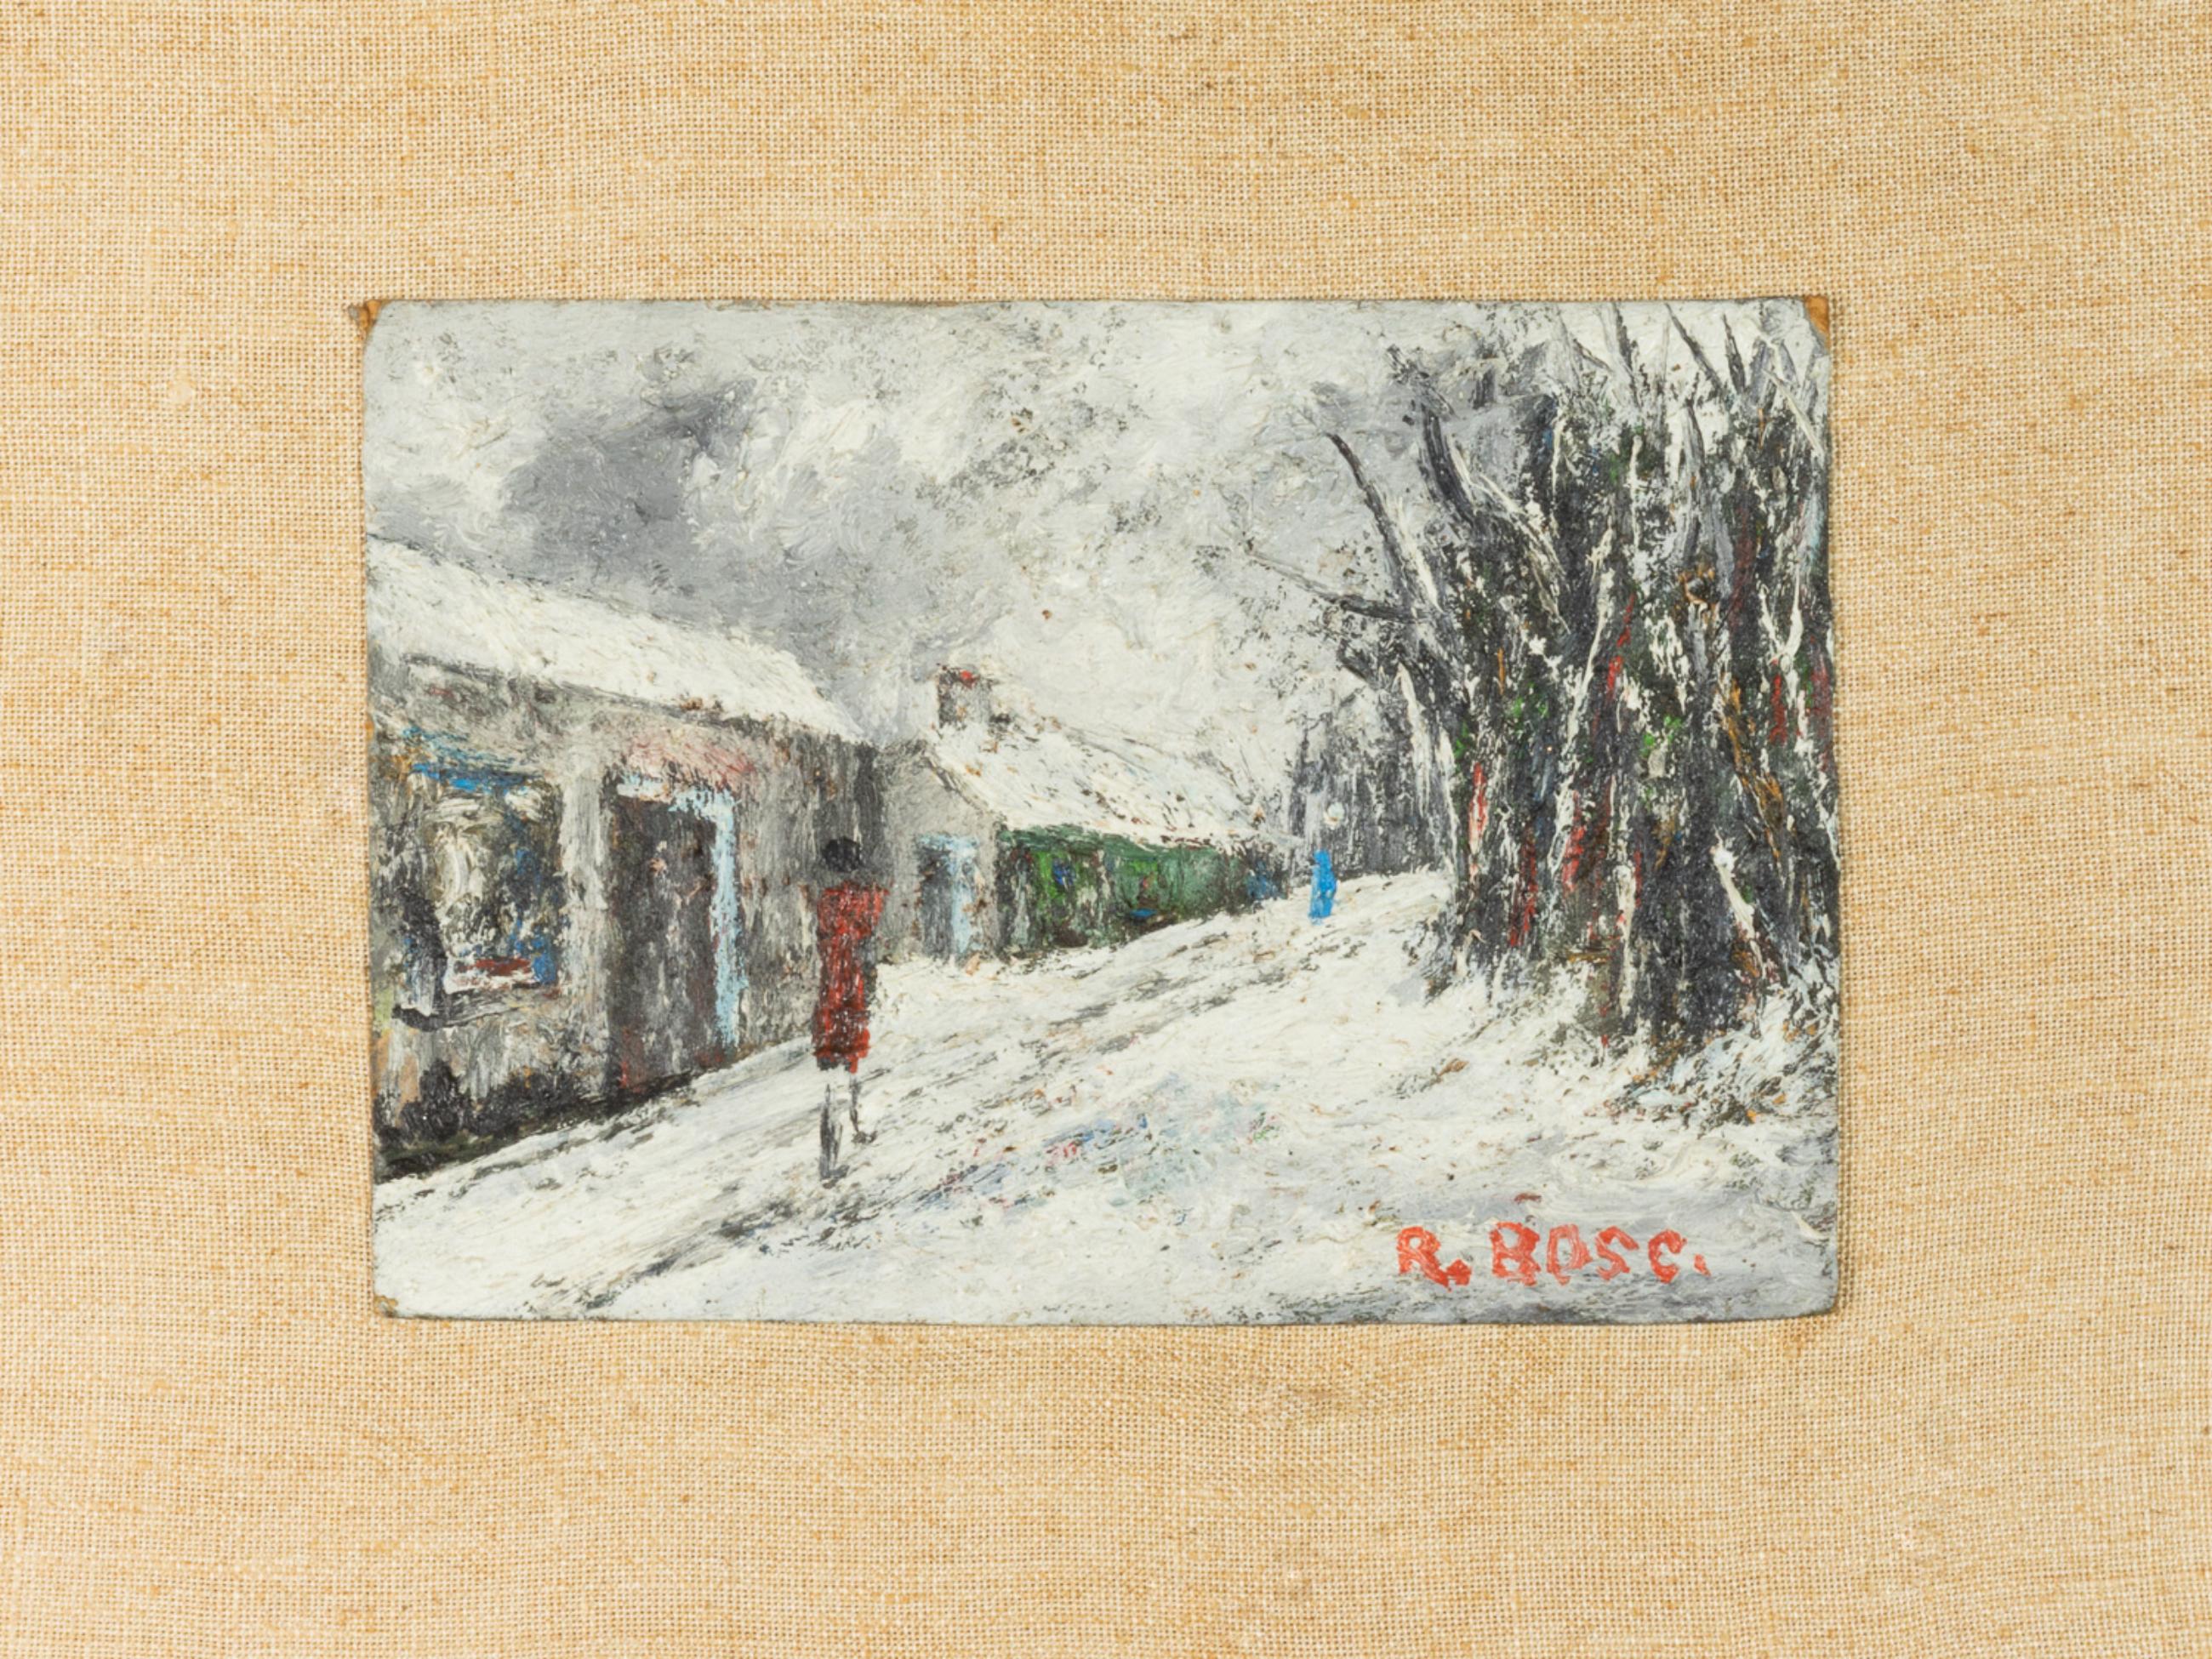 Ein Ölgemälde aus dem frühen 20. Jahrhundert auf einer zusammengesetzten Tafel mit einer Winterlandschaft mit Schnee und Menschen, die im Bosque de Bologna spazieren gehen.
